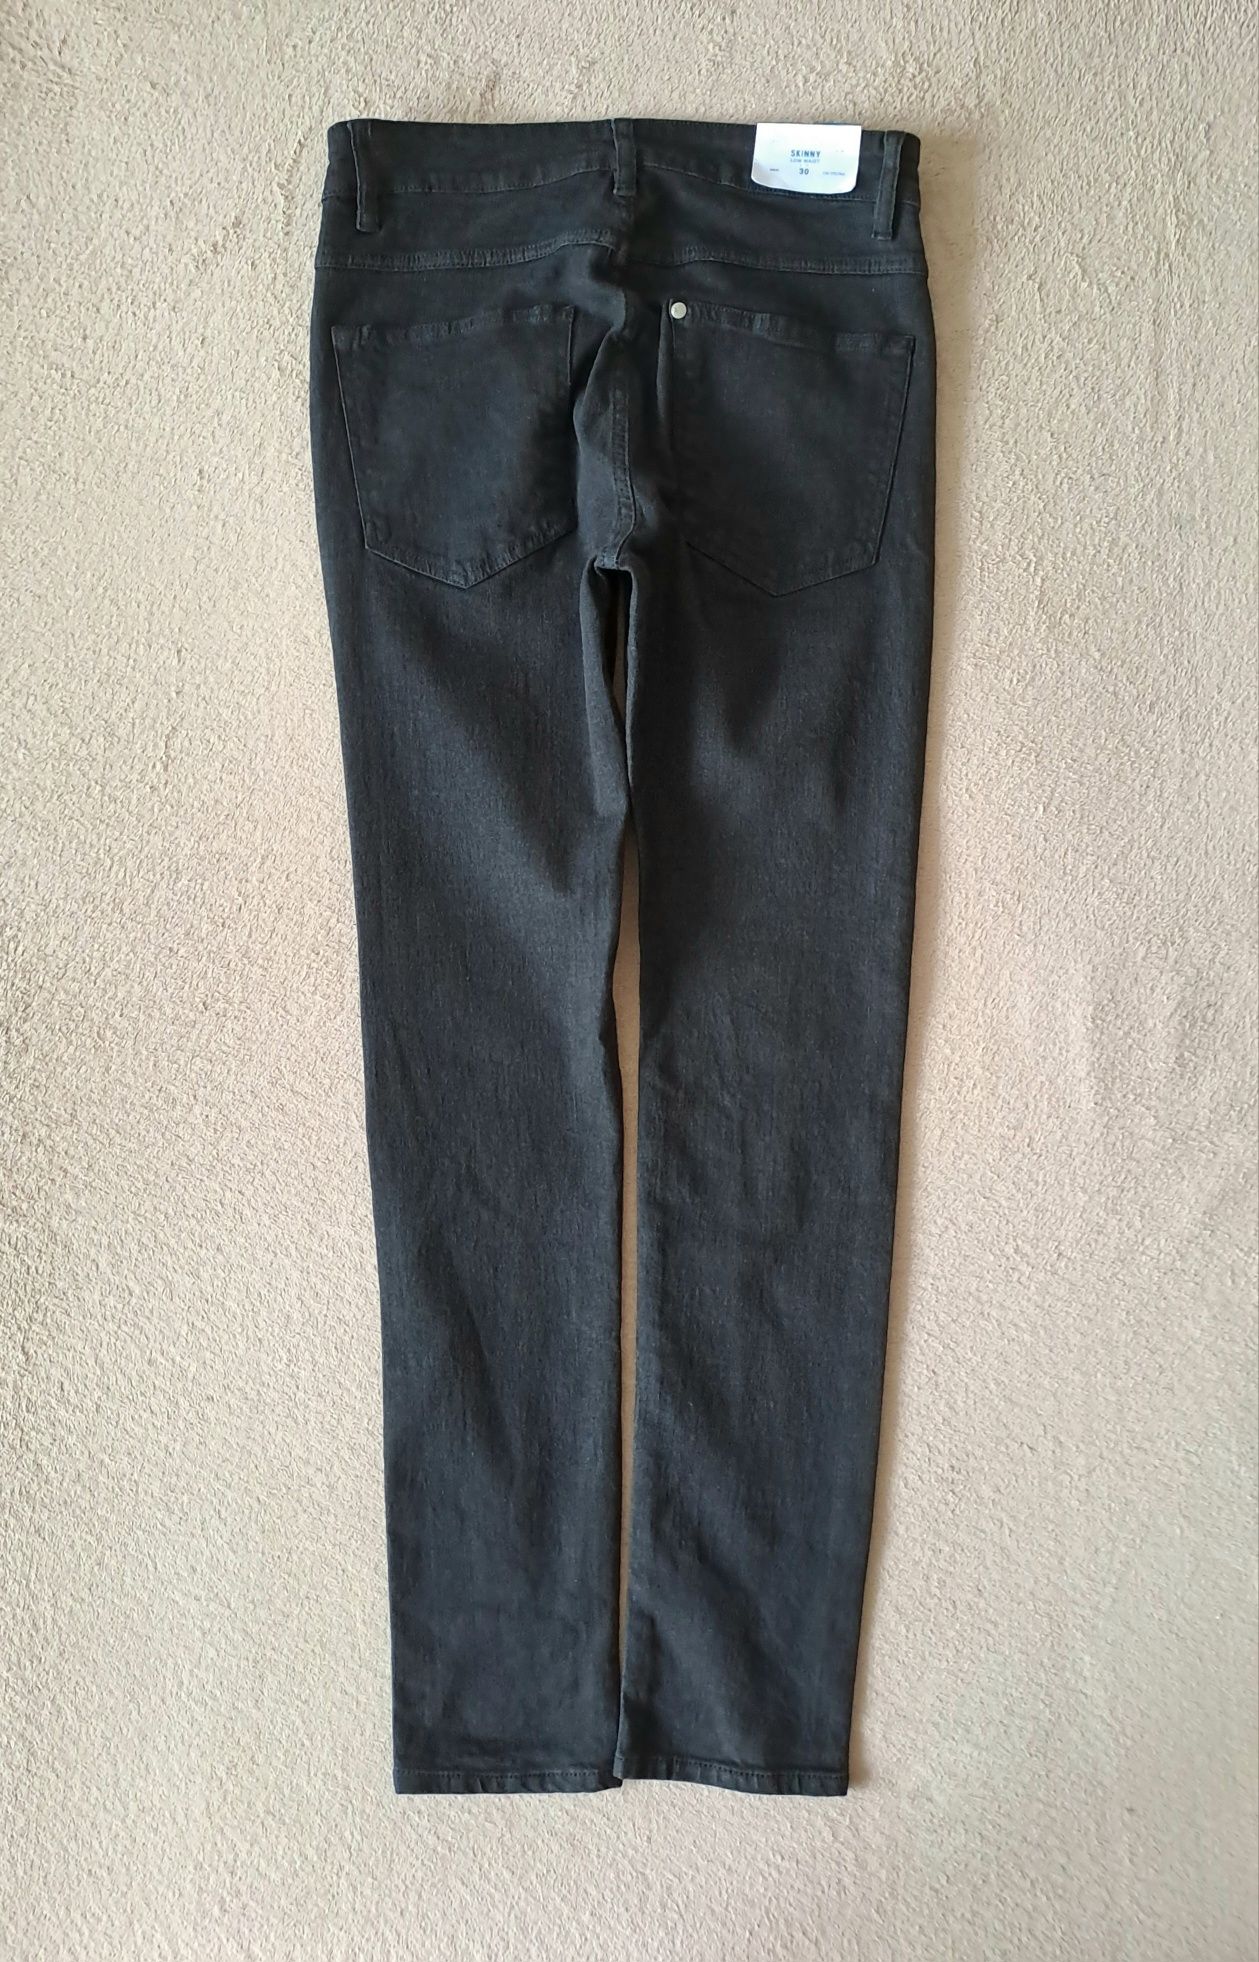 NOWE jeansy H&M roz. 30/32 S/M skinny styl moda klasyka komfort